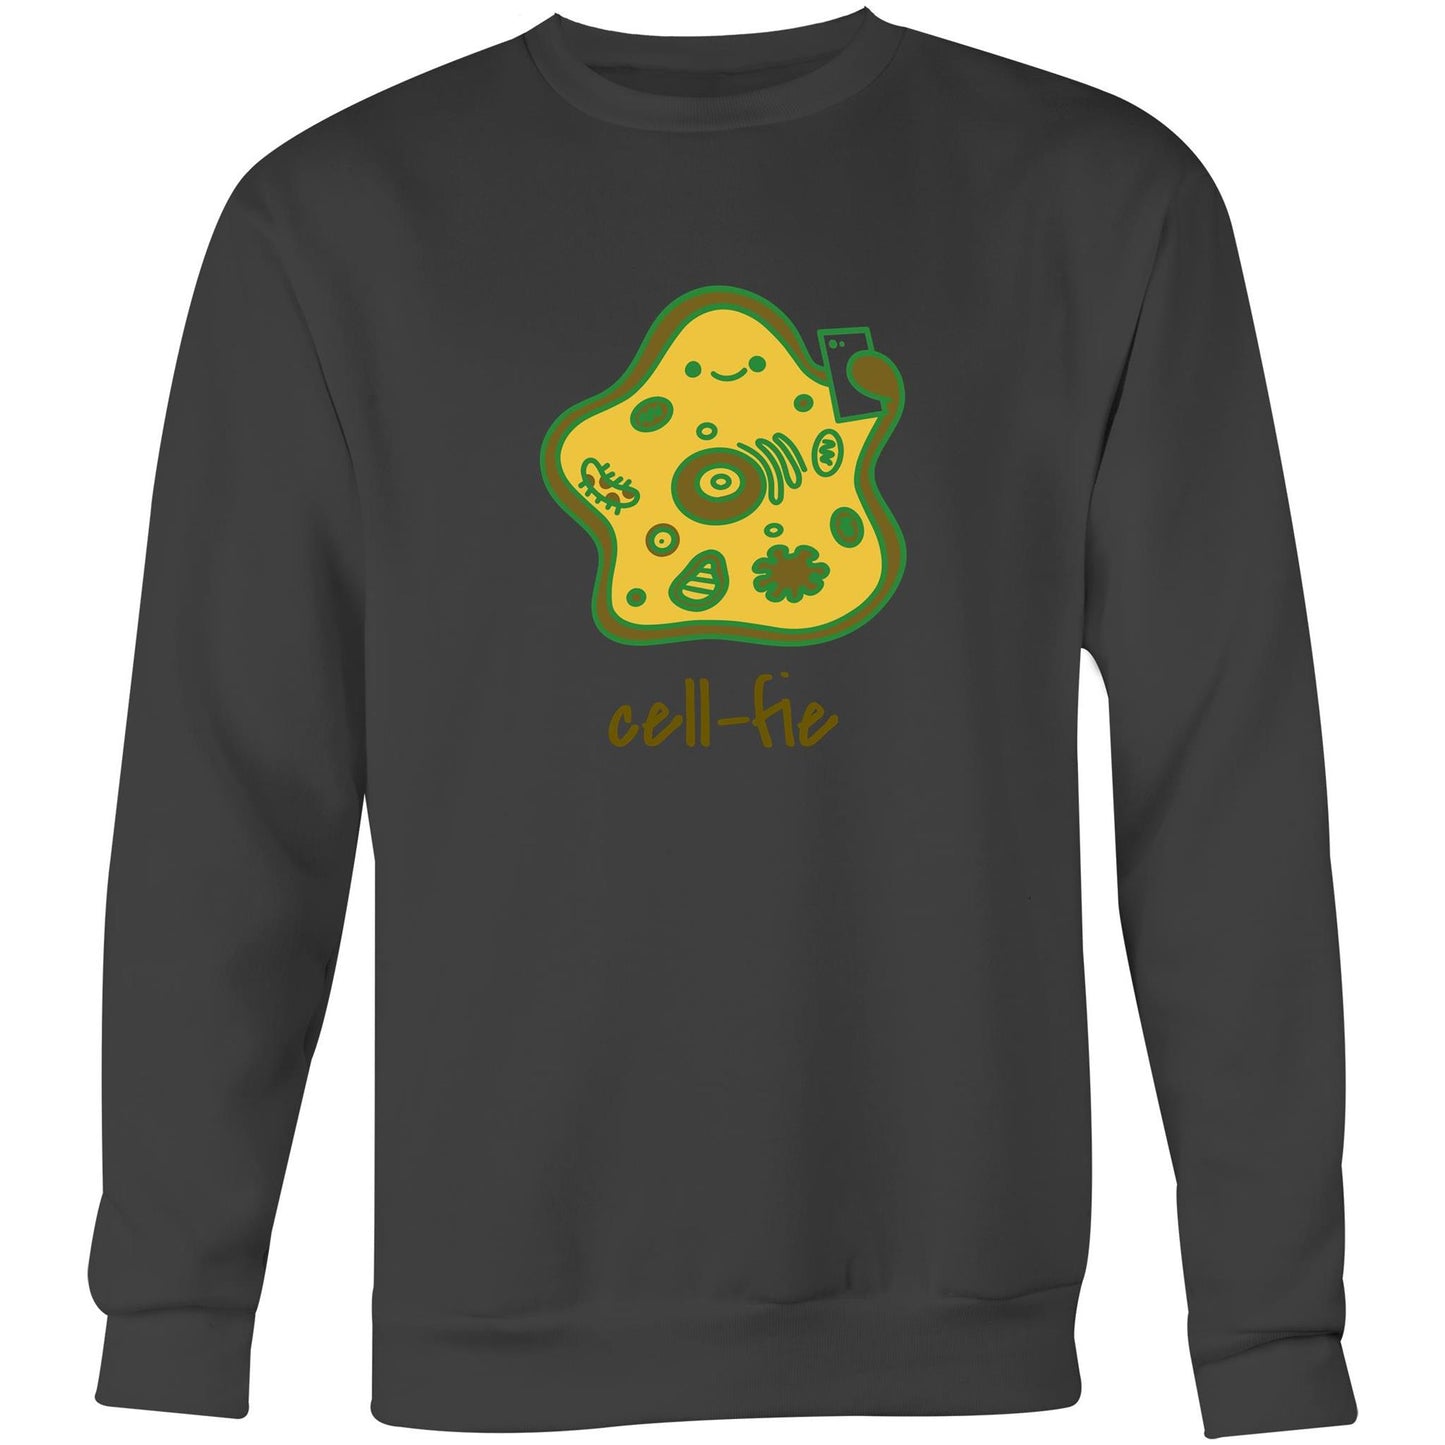 Cell-fie - Crew Sweatshirt Coal Sweatshirt Science